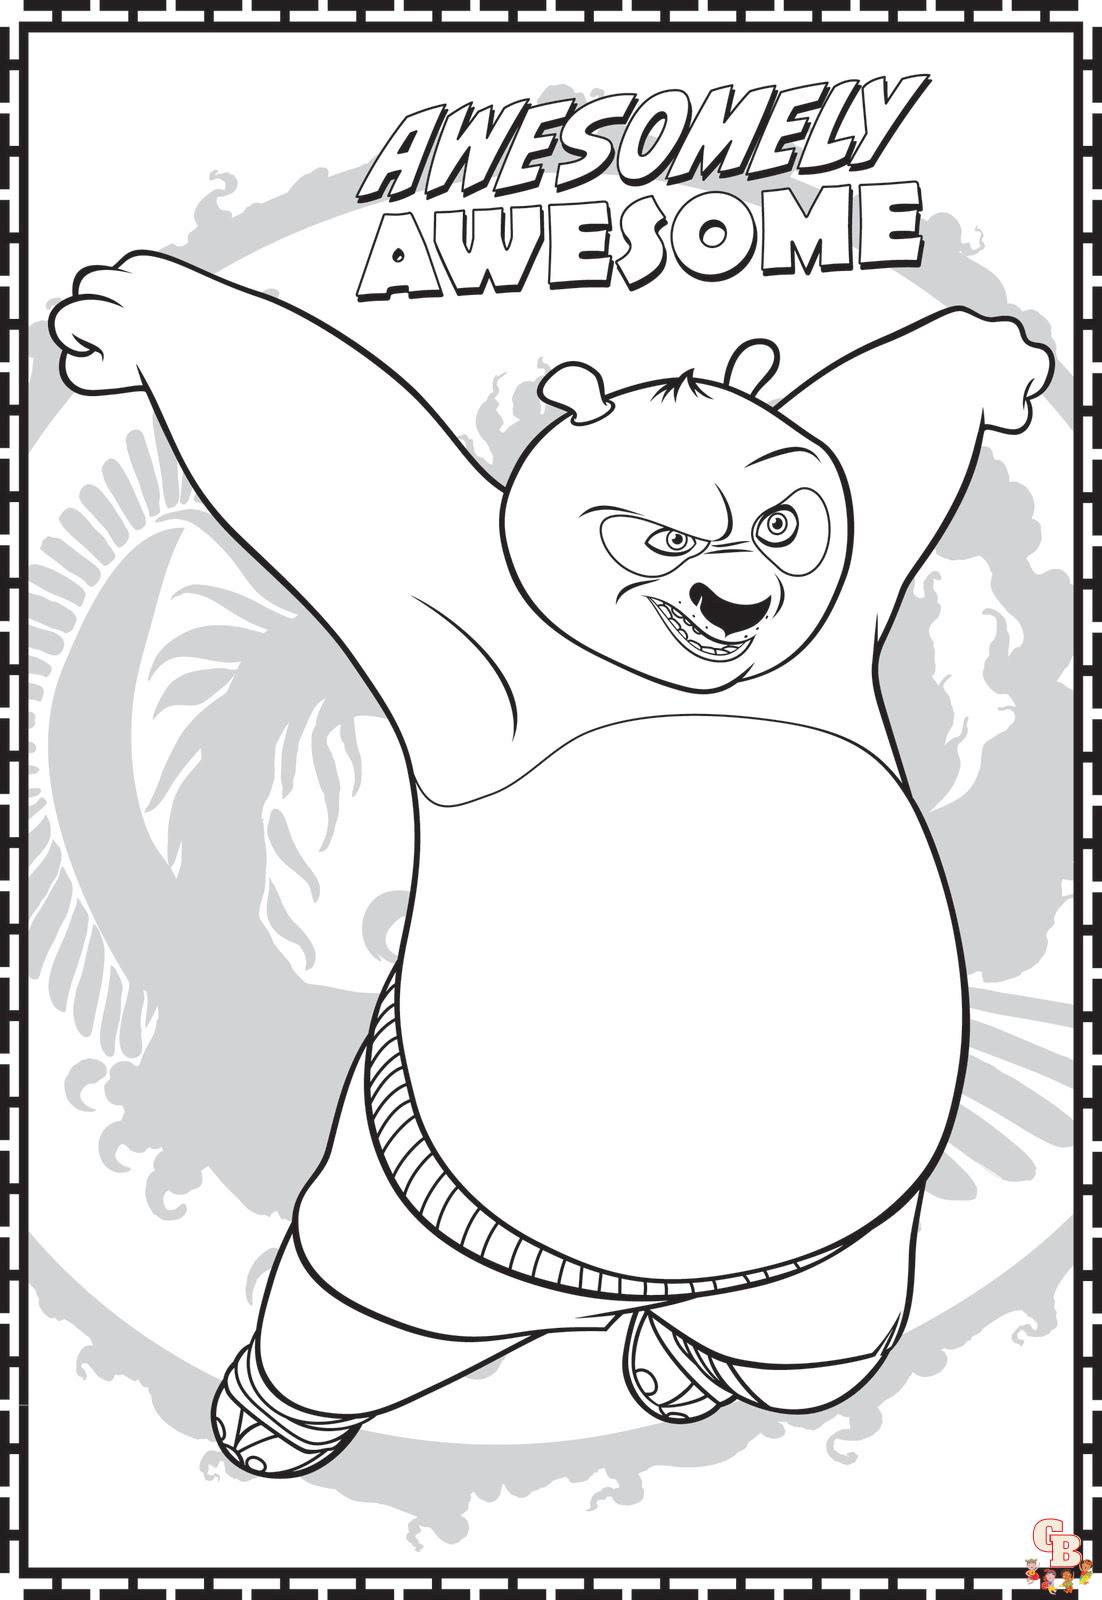 Páginas para colorir do Kung Fu Panda